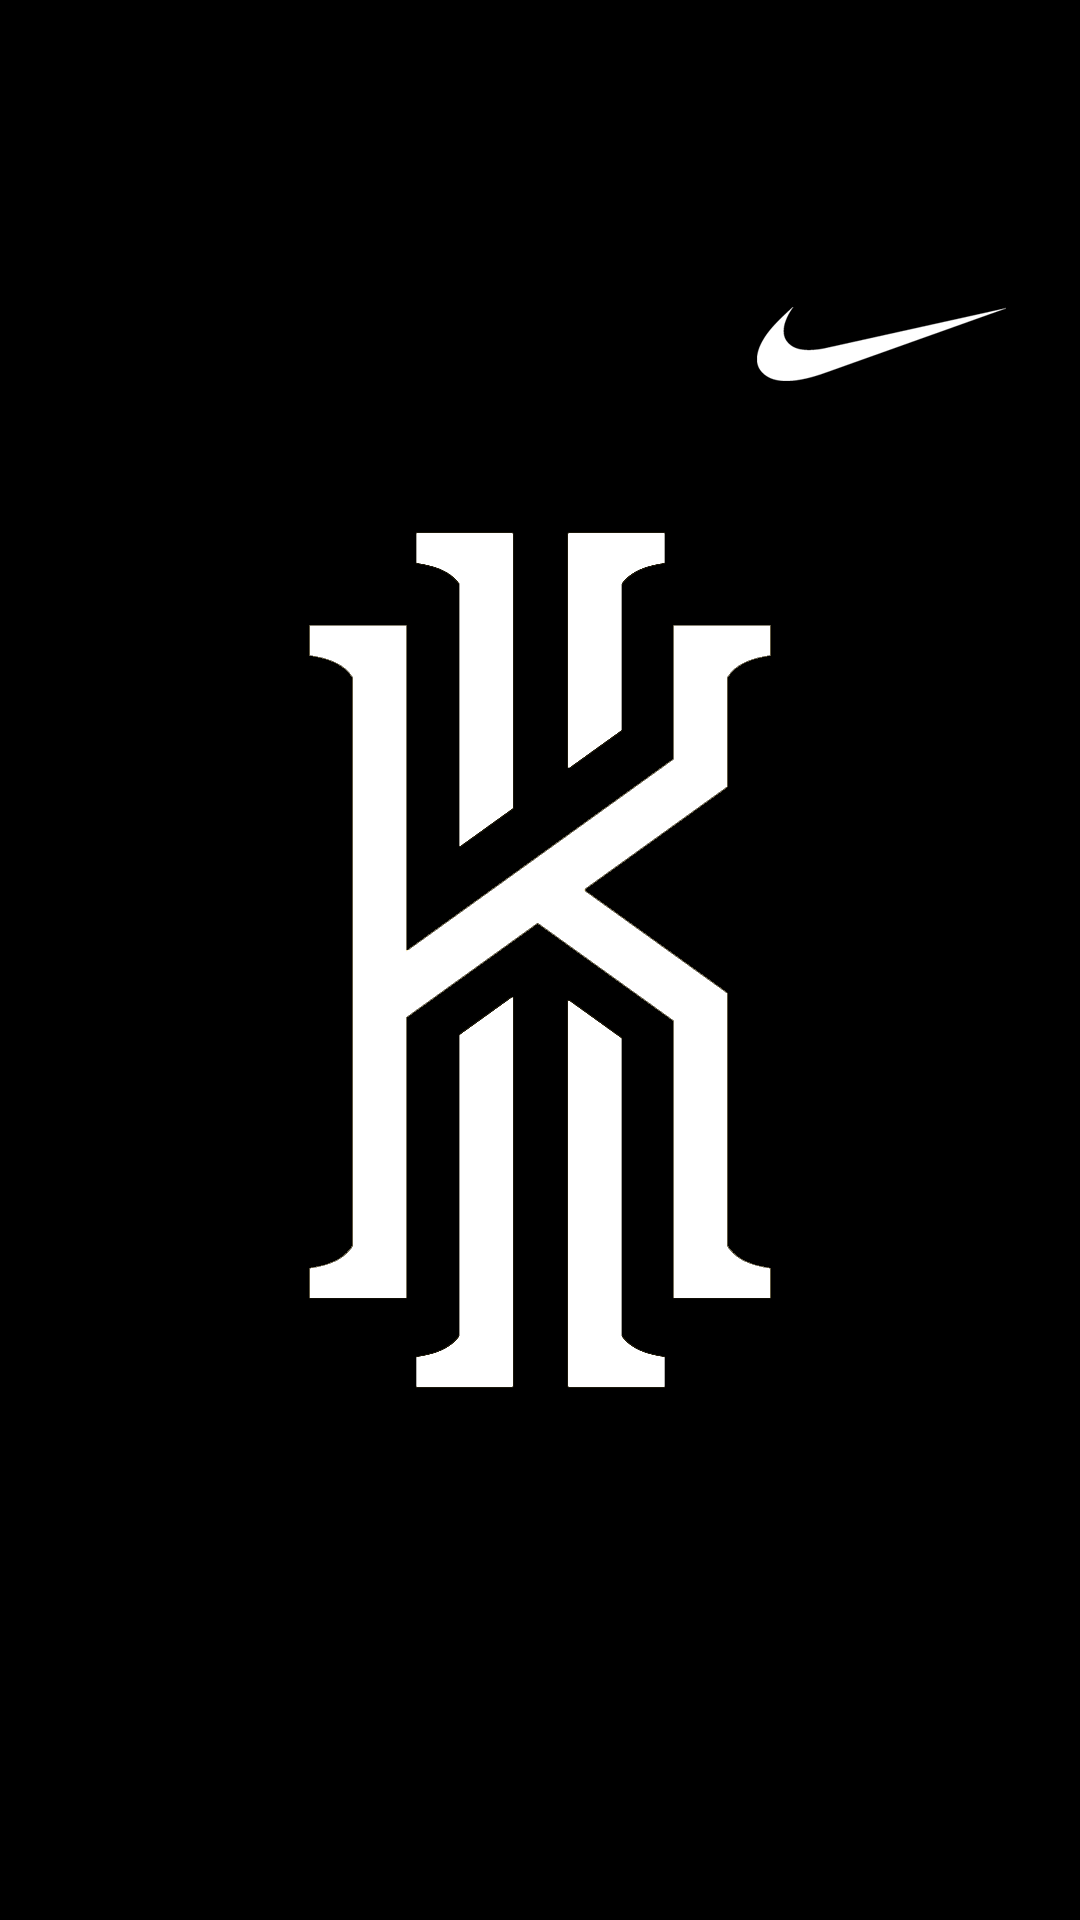 Kyrie Irving Logo - Home Screen | SPORTZ WALLPAPERZ | Kyrie irving, Kyrie irving logo ...